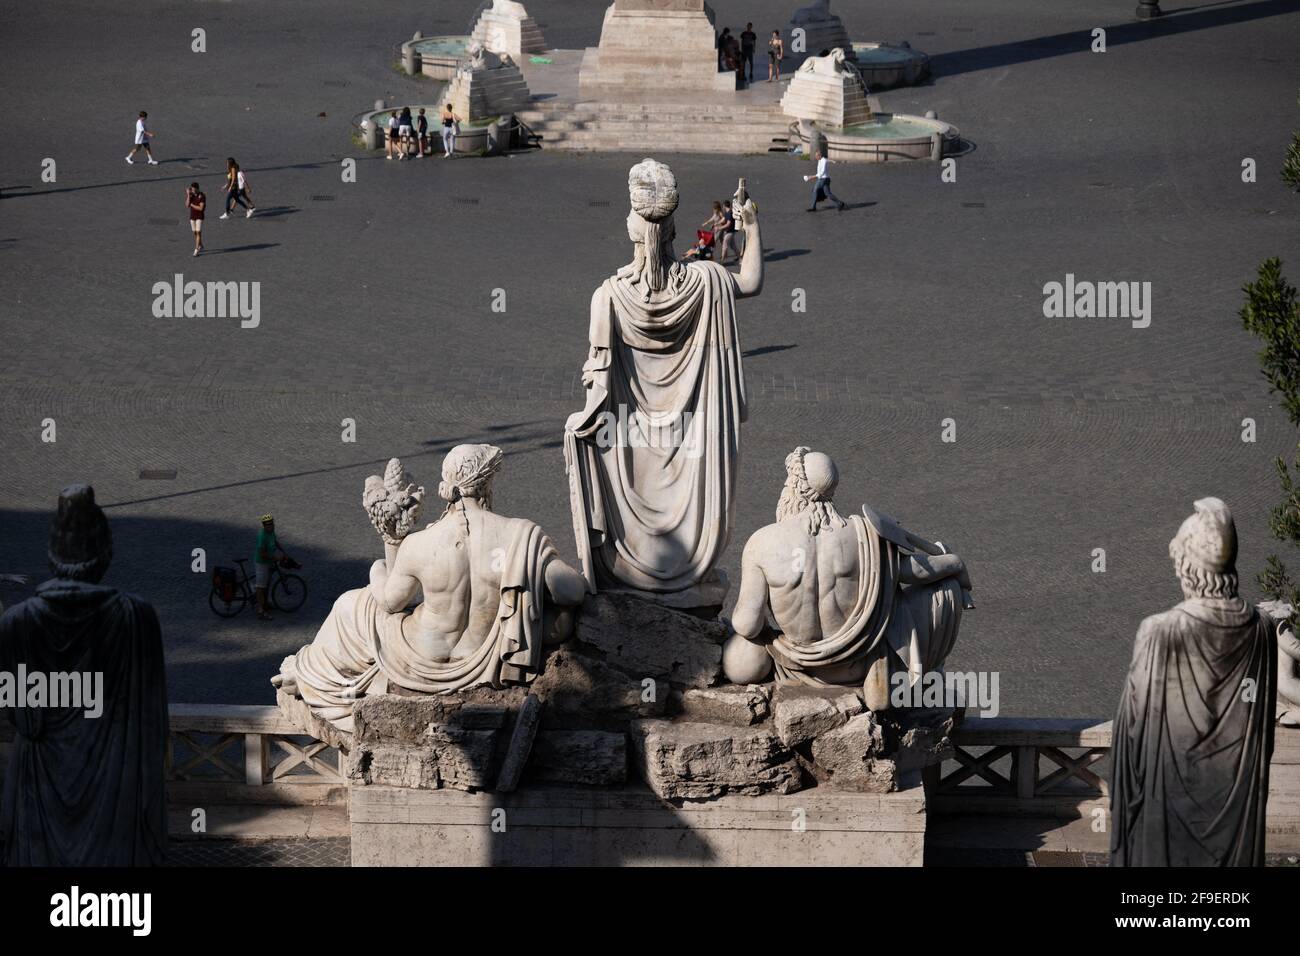 Italy, Rome, Fountain of the Goddess Rome (Fontana della Dea Roma) sculptures facing the Piazza del Popolo city square Stock Photo